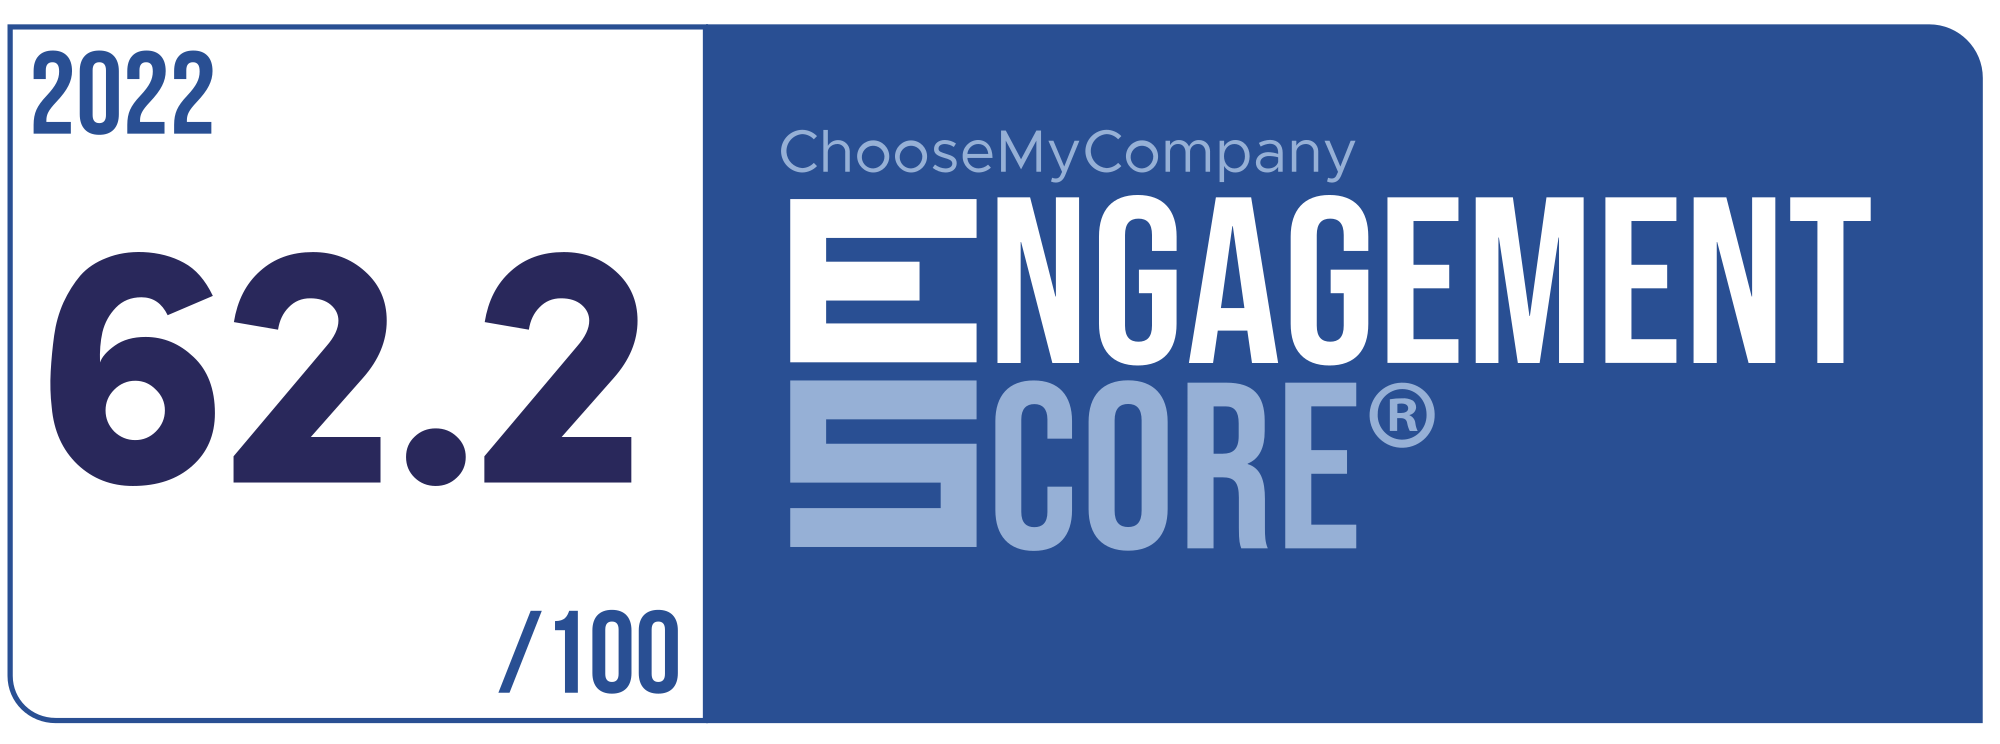 Label Engagement Score 2022 